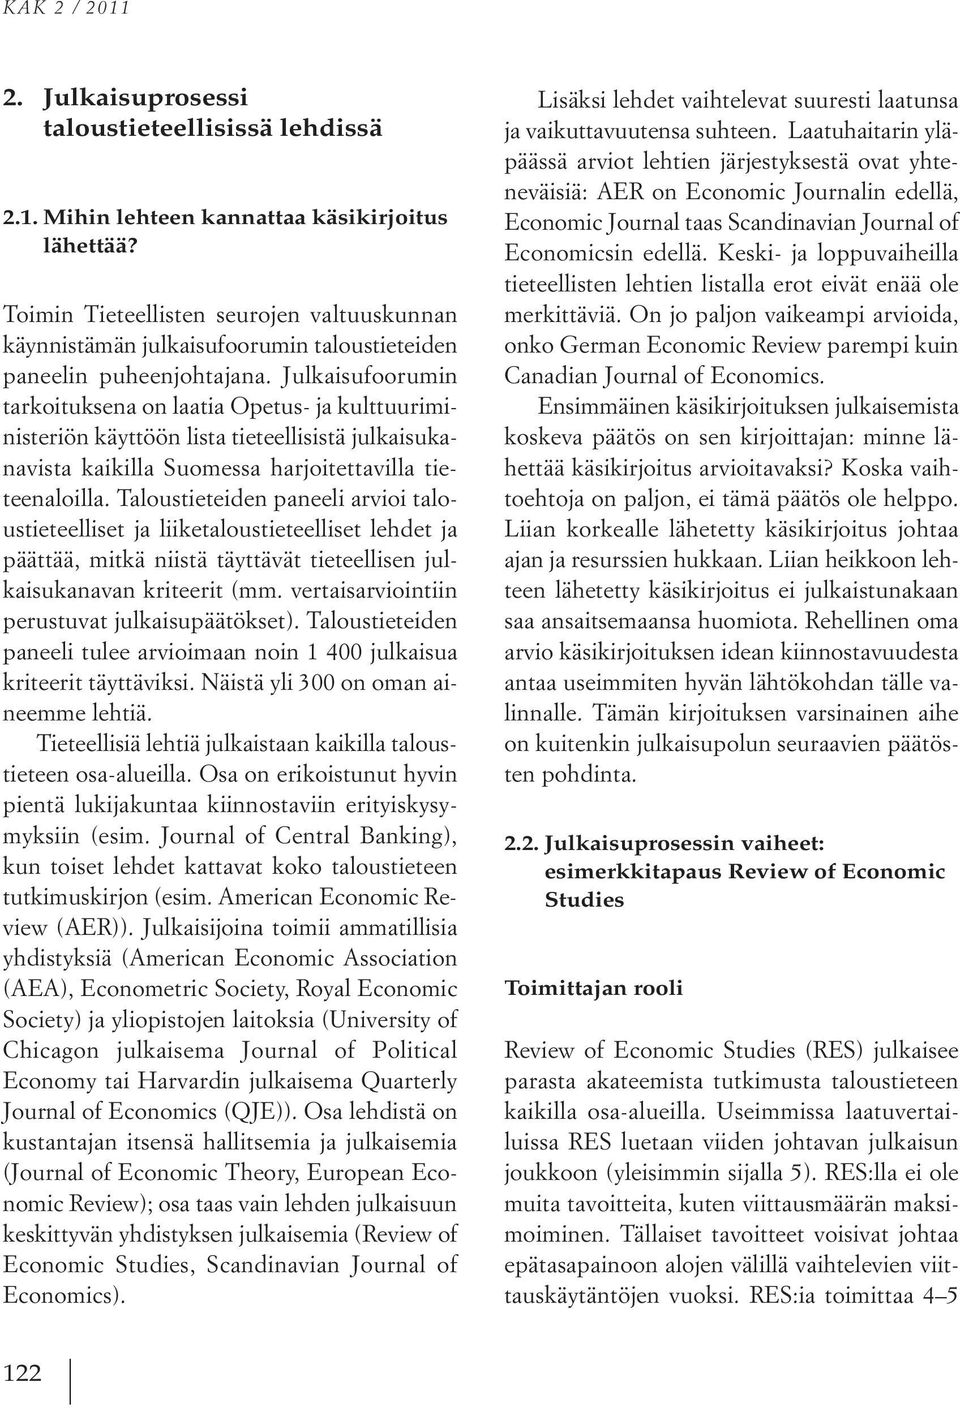 Julkaisufoorumin tarkoituksena on laatia Opetus- ja kulttuuriministeriön käyttöön lista tieteellisistä julkaisukanavista kaikilla Suomessa harjoitettavilla tieteenaloilla.